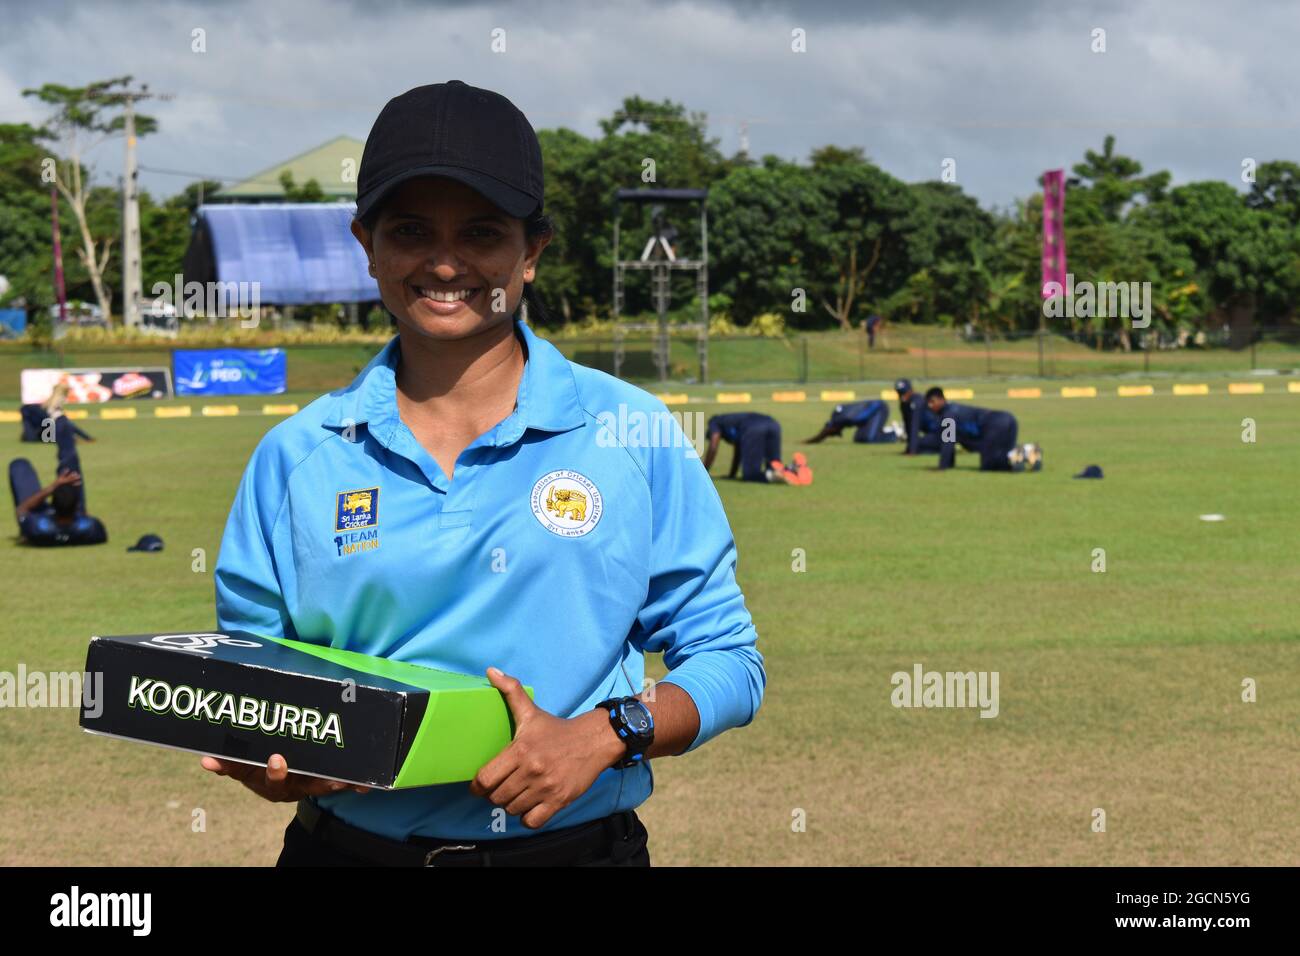 Ritratto di un umpire femminile dello Sri Lanka ad una partita di cricket presso l'Army Ordinance cricket Grounds, Dombagoda. Le donne che sono state coinvolte con il cricket come i giocatori stanno prendendo l'umpiring e segnando per essere coinvolte con il gioco. Sri Lanka. Foto Stock